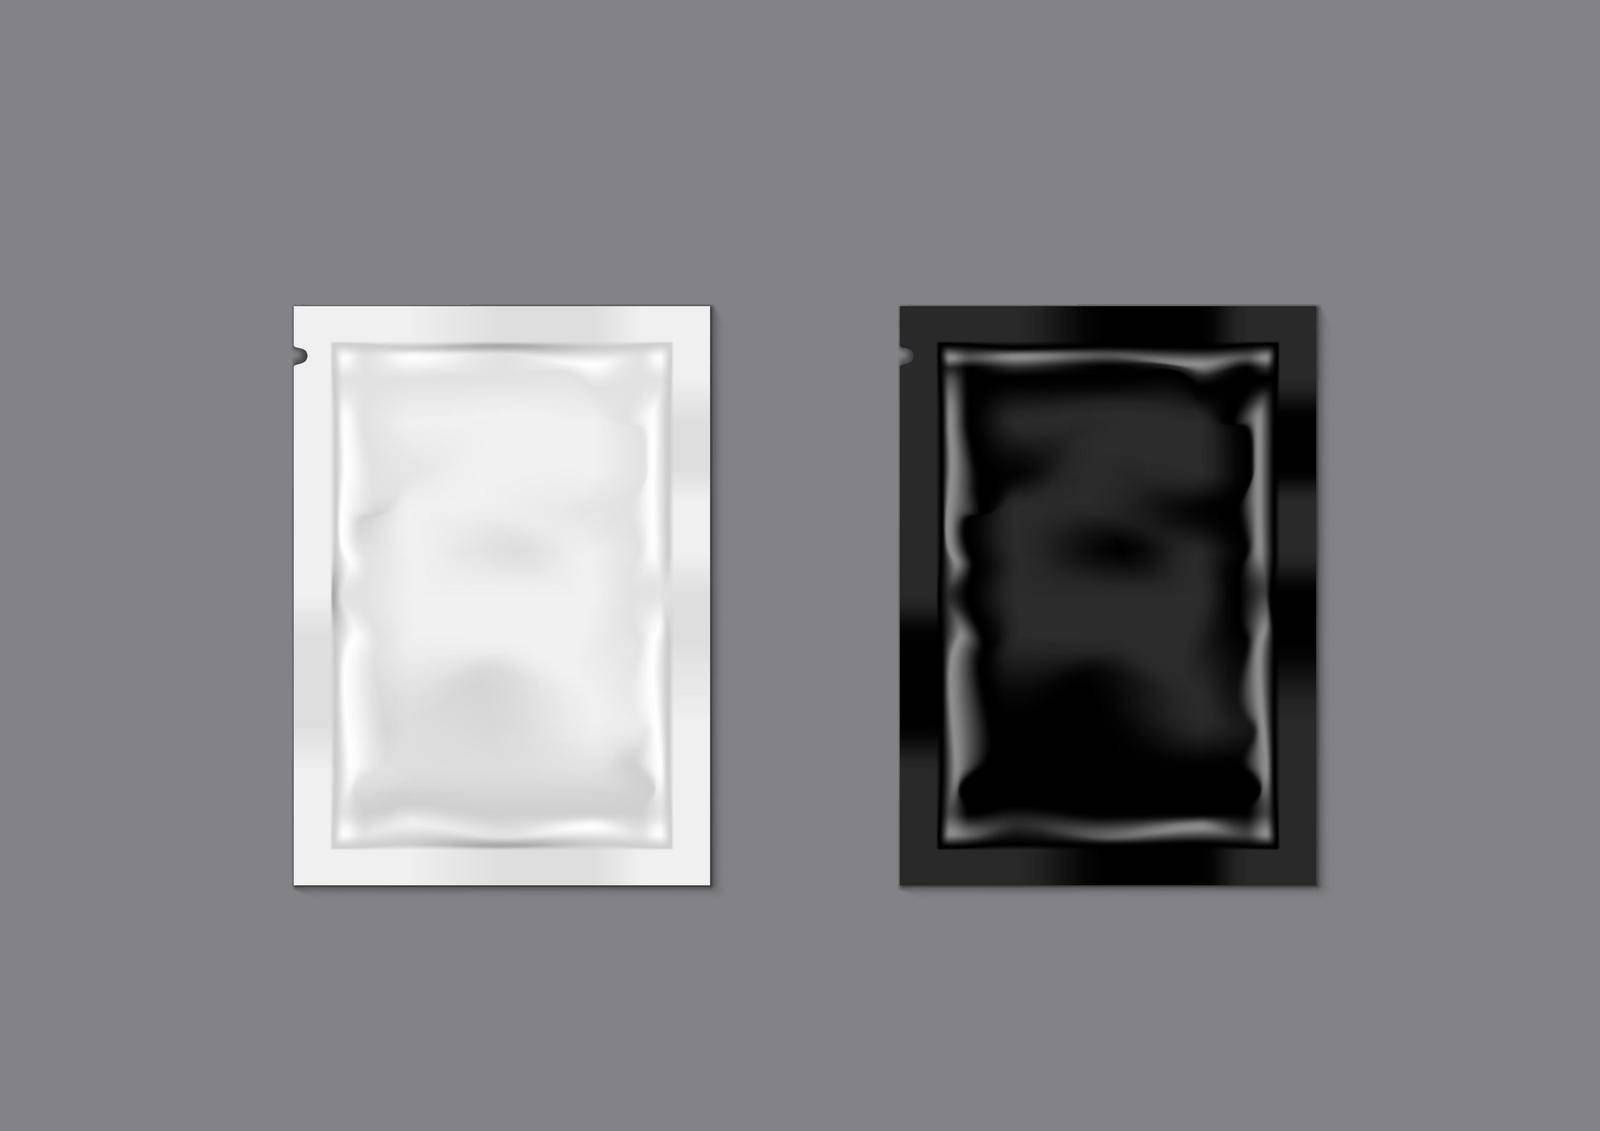 Blank Black And White Mini Sachet Packet Of Salt, Pepper Or Sugar. EPS10 Vector